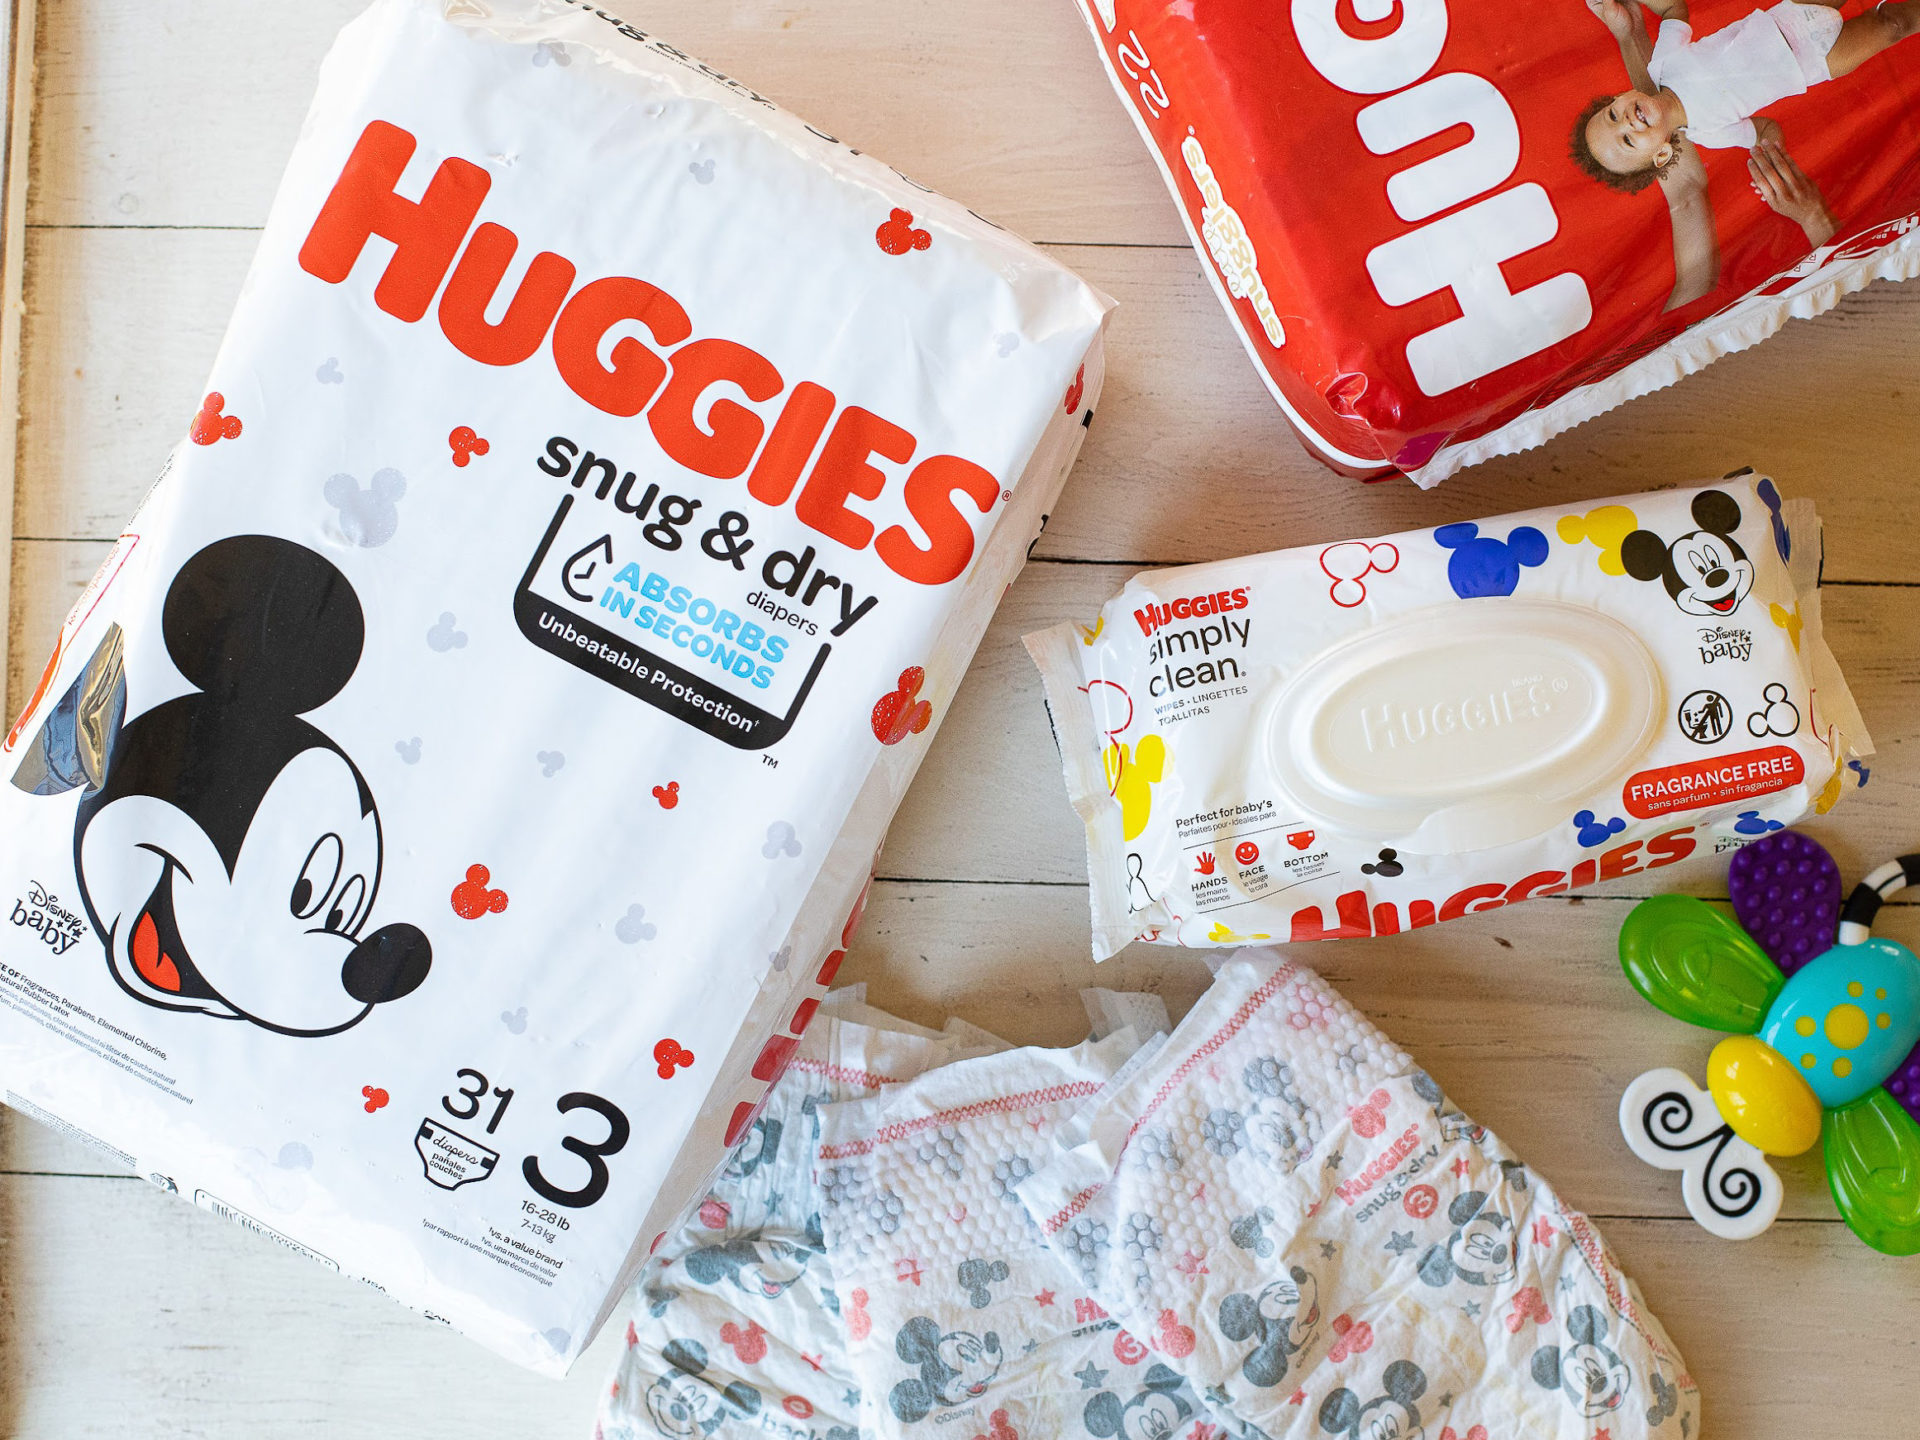 Huggies Diapers As Low As $6.49 At Kroger – Deal Ends Soon!